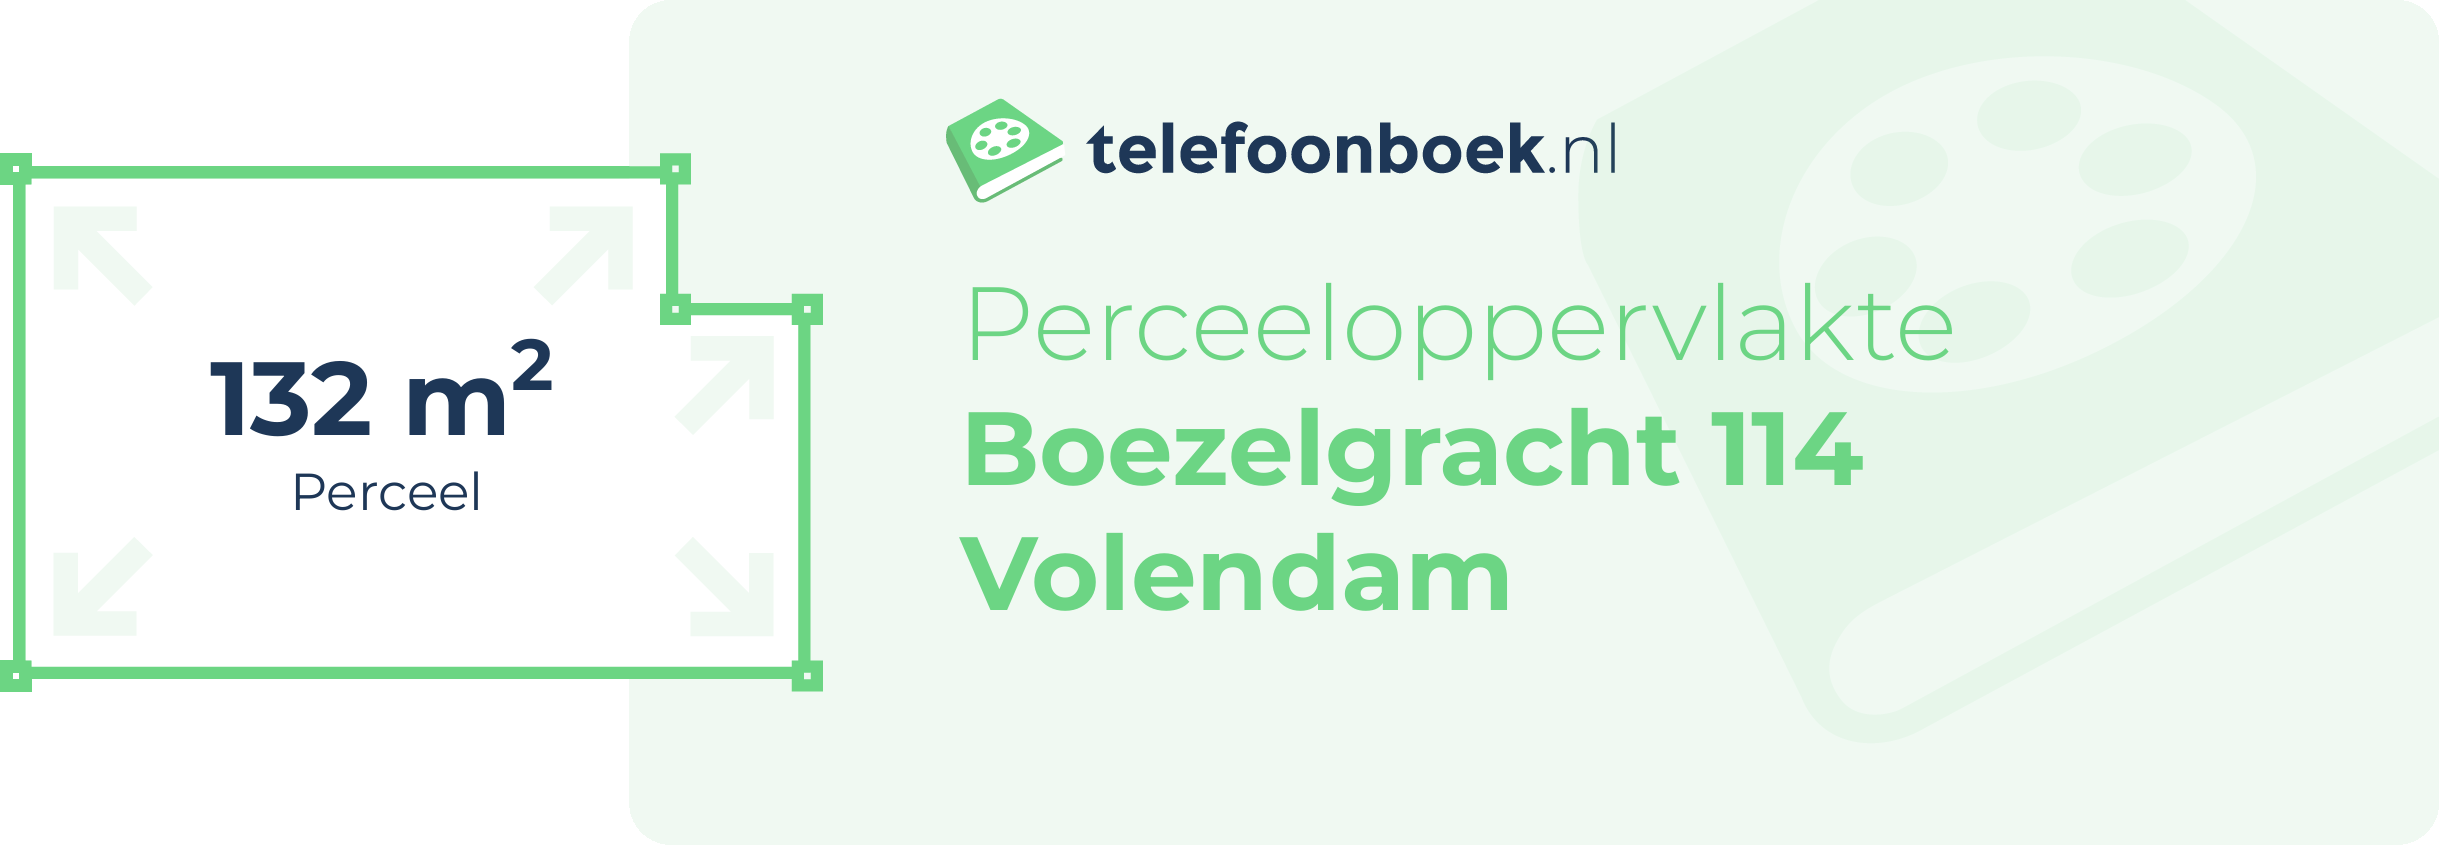 Perceeloppervlakte Boezelgracht 114 Volendam